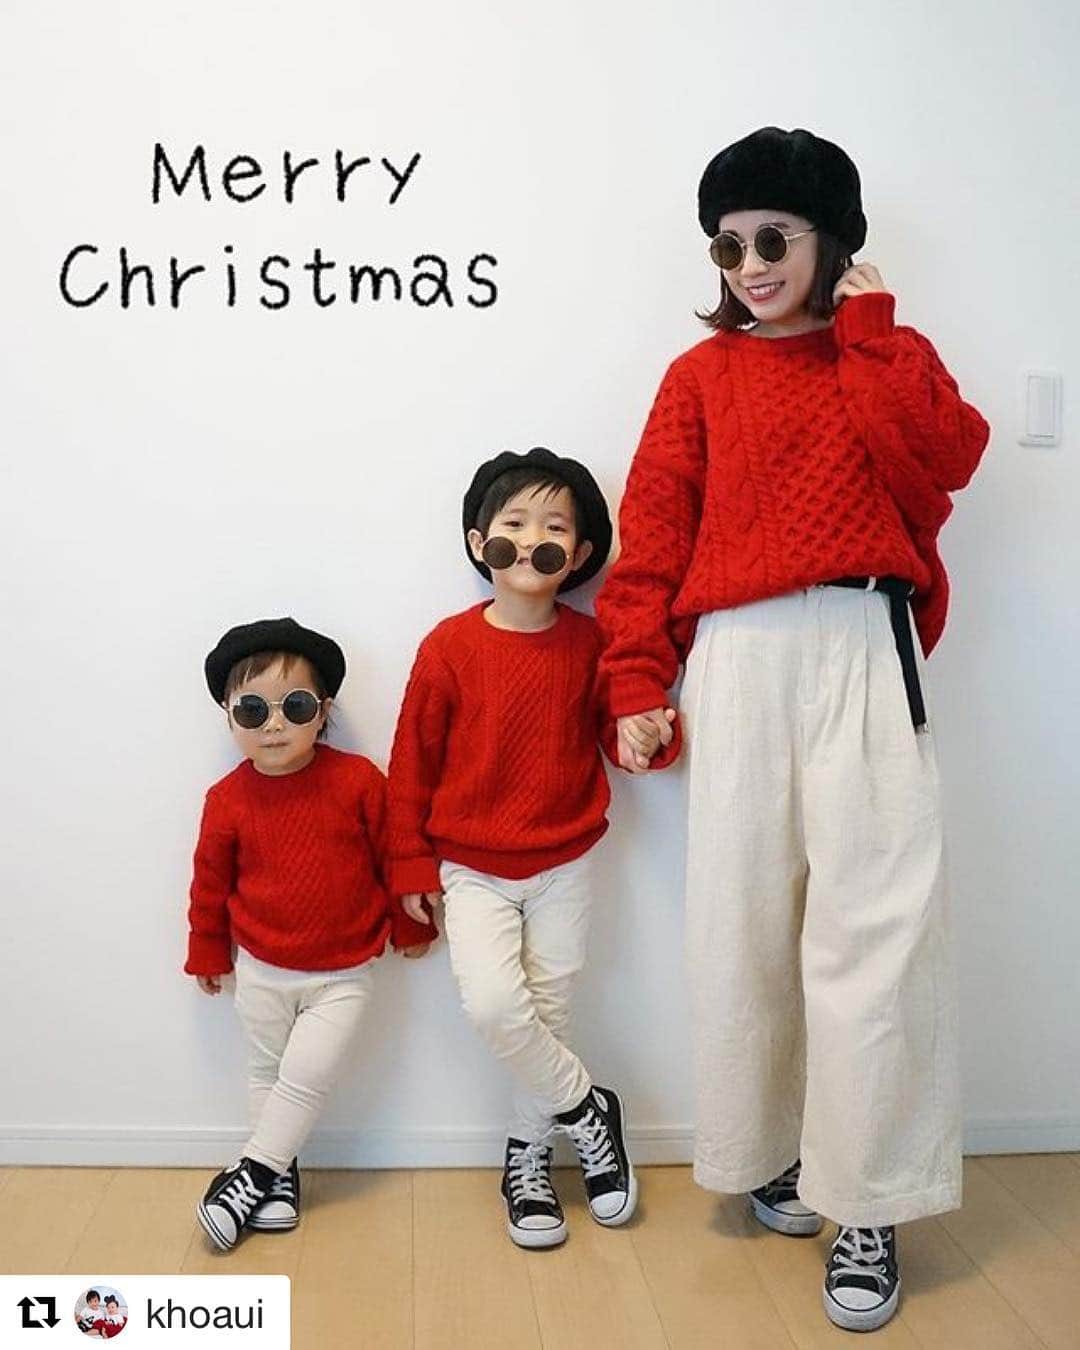 mamaPRESS -ママプレス- のインスタグラム：「クリスマス終わっちゃったけど、素敵なポストをまだまだご紹介しちゃいます☺️✨ ・ 赤と白の完全おそろコーデでクリスマス感たっぷり💕 黒コンバース、ベレー帽、丸メガネまで揃えた完コピに脱帽👏✨✨ ・ @khoaui さん、ありがとうございました♡ ・ ・ 【写真や動画を募集中！】 ママプレスは、 みなさんから投稿を大募集！  photo:#ママプレス #mamaPRESS movie:#ママプレスムービー  のハッシュタグをつけて、 ぜひインスタに投稿してね！ ※投稿はリポストや記事でご紹介させていただくことも！ ・ ・ ▼こちらのタグも募集中！ #美ママプレス #ママプ子育て川柳 ※紹介させていただいた記事はプロフィ―ルから飛べます ・ ・ みなさんからの たくさんの投稿を お待ちしまています☺️🙏💕 ・ ・」